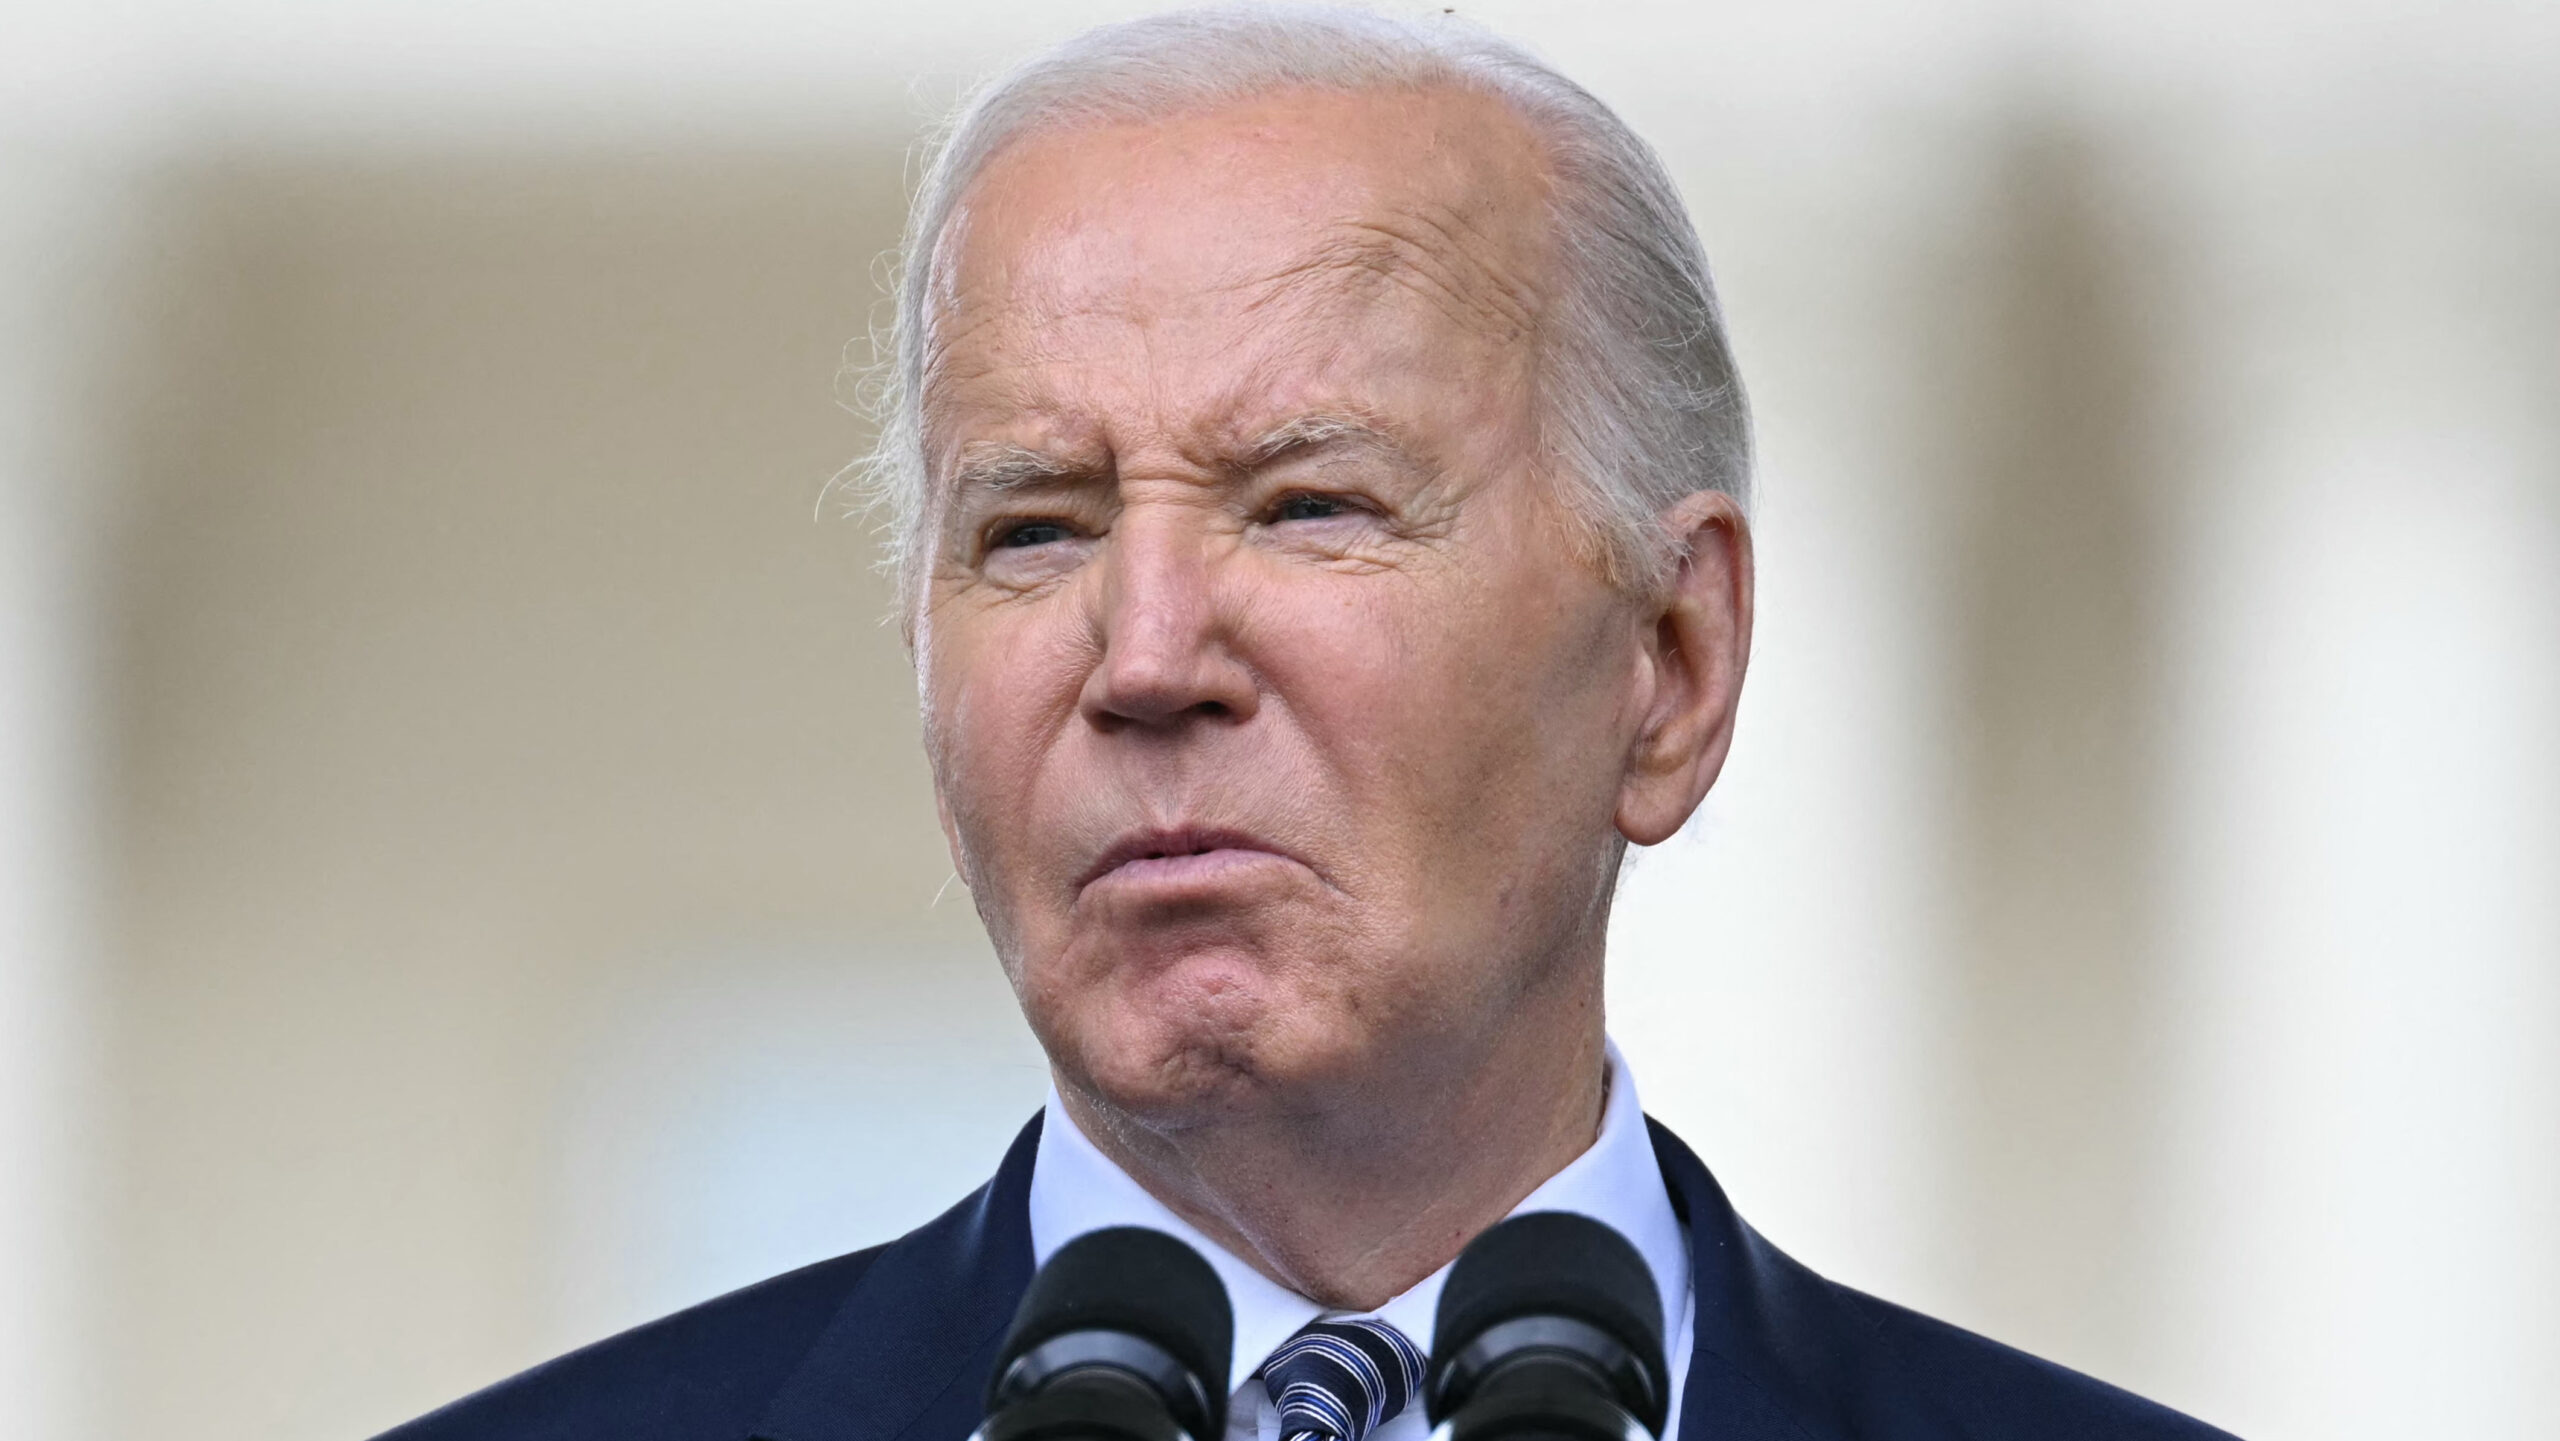 Biden dismisses ICC warrants for Israeli leaders, denies genocide